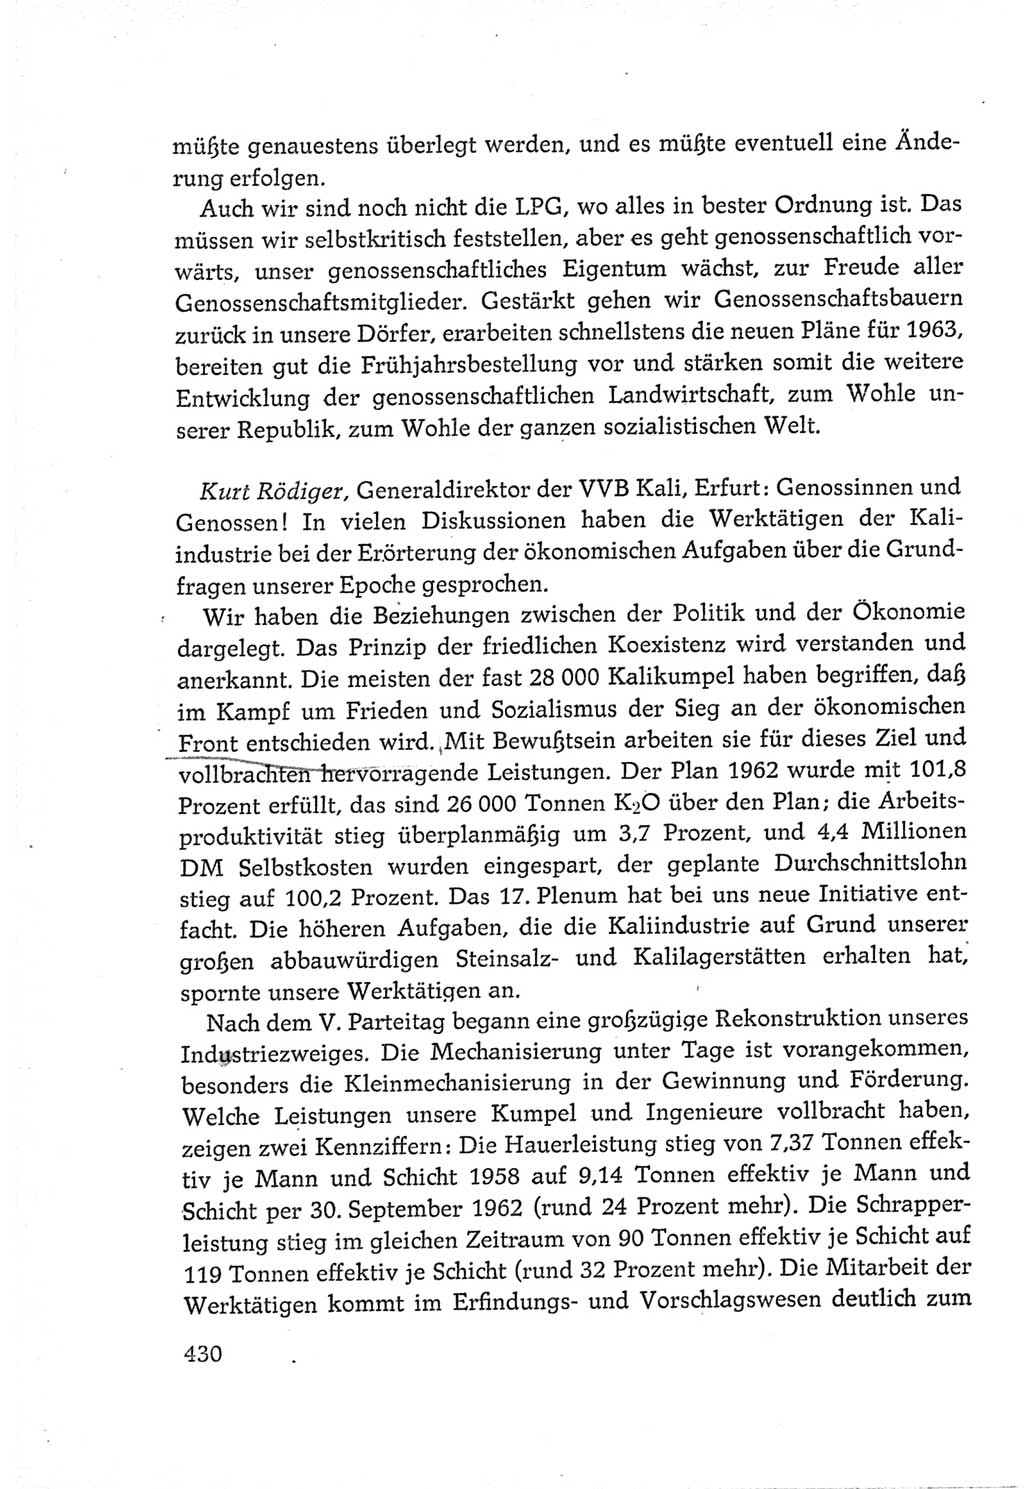 Protokoll der Verhandlungen des Ⅵ. Parteitages der Sozialistischen Einheitspartei Deutschlands (SED) [Deutsche Demokratische Republik (DDR)] 1963, Band Ⅲ, Seite 430 (Prot. Verh. Ⅵ. PT SED DDR 1963, Bd. Ⅲ, S. 430)